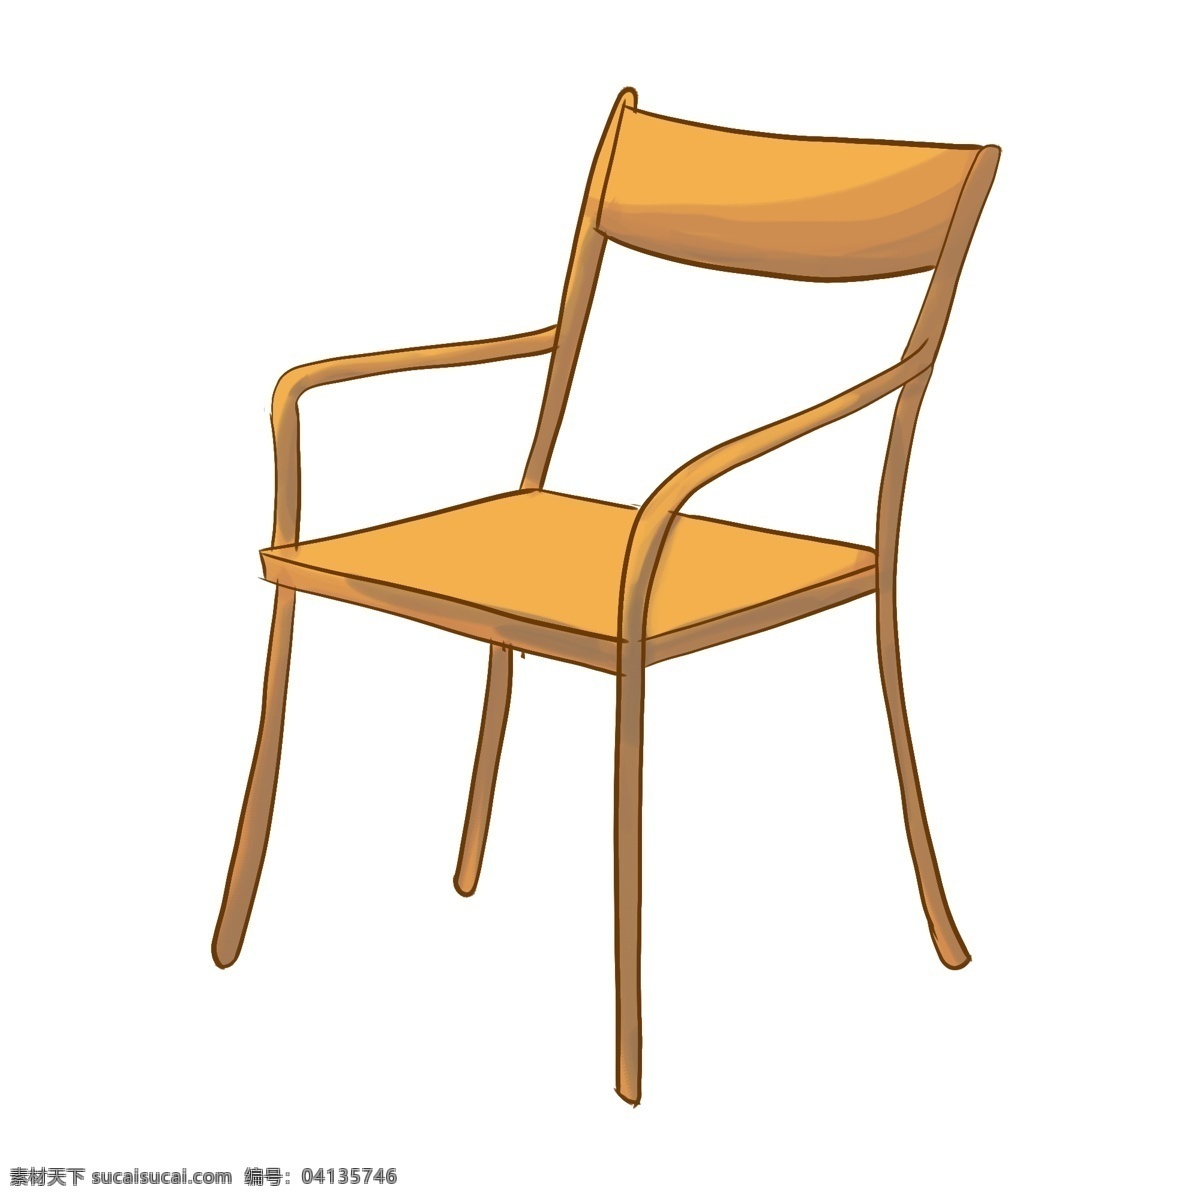 木头 椅子 装饰 插画 木头椅子 黄色的椅子 木质椅子 家具椅子 家装椅子 漂亮的椅子 创意椅子